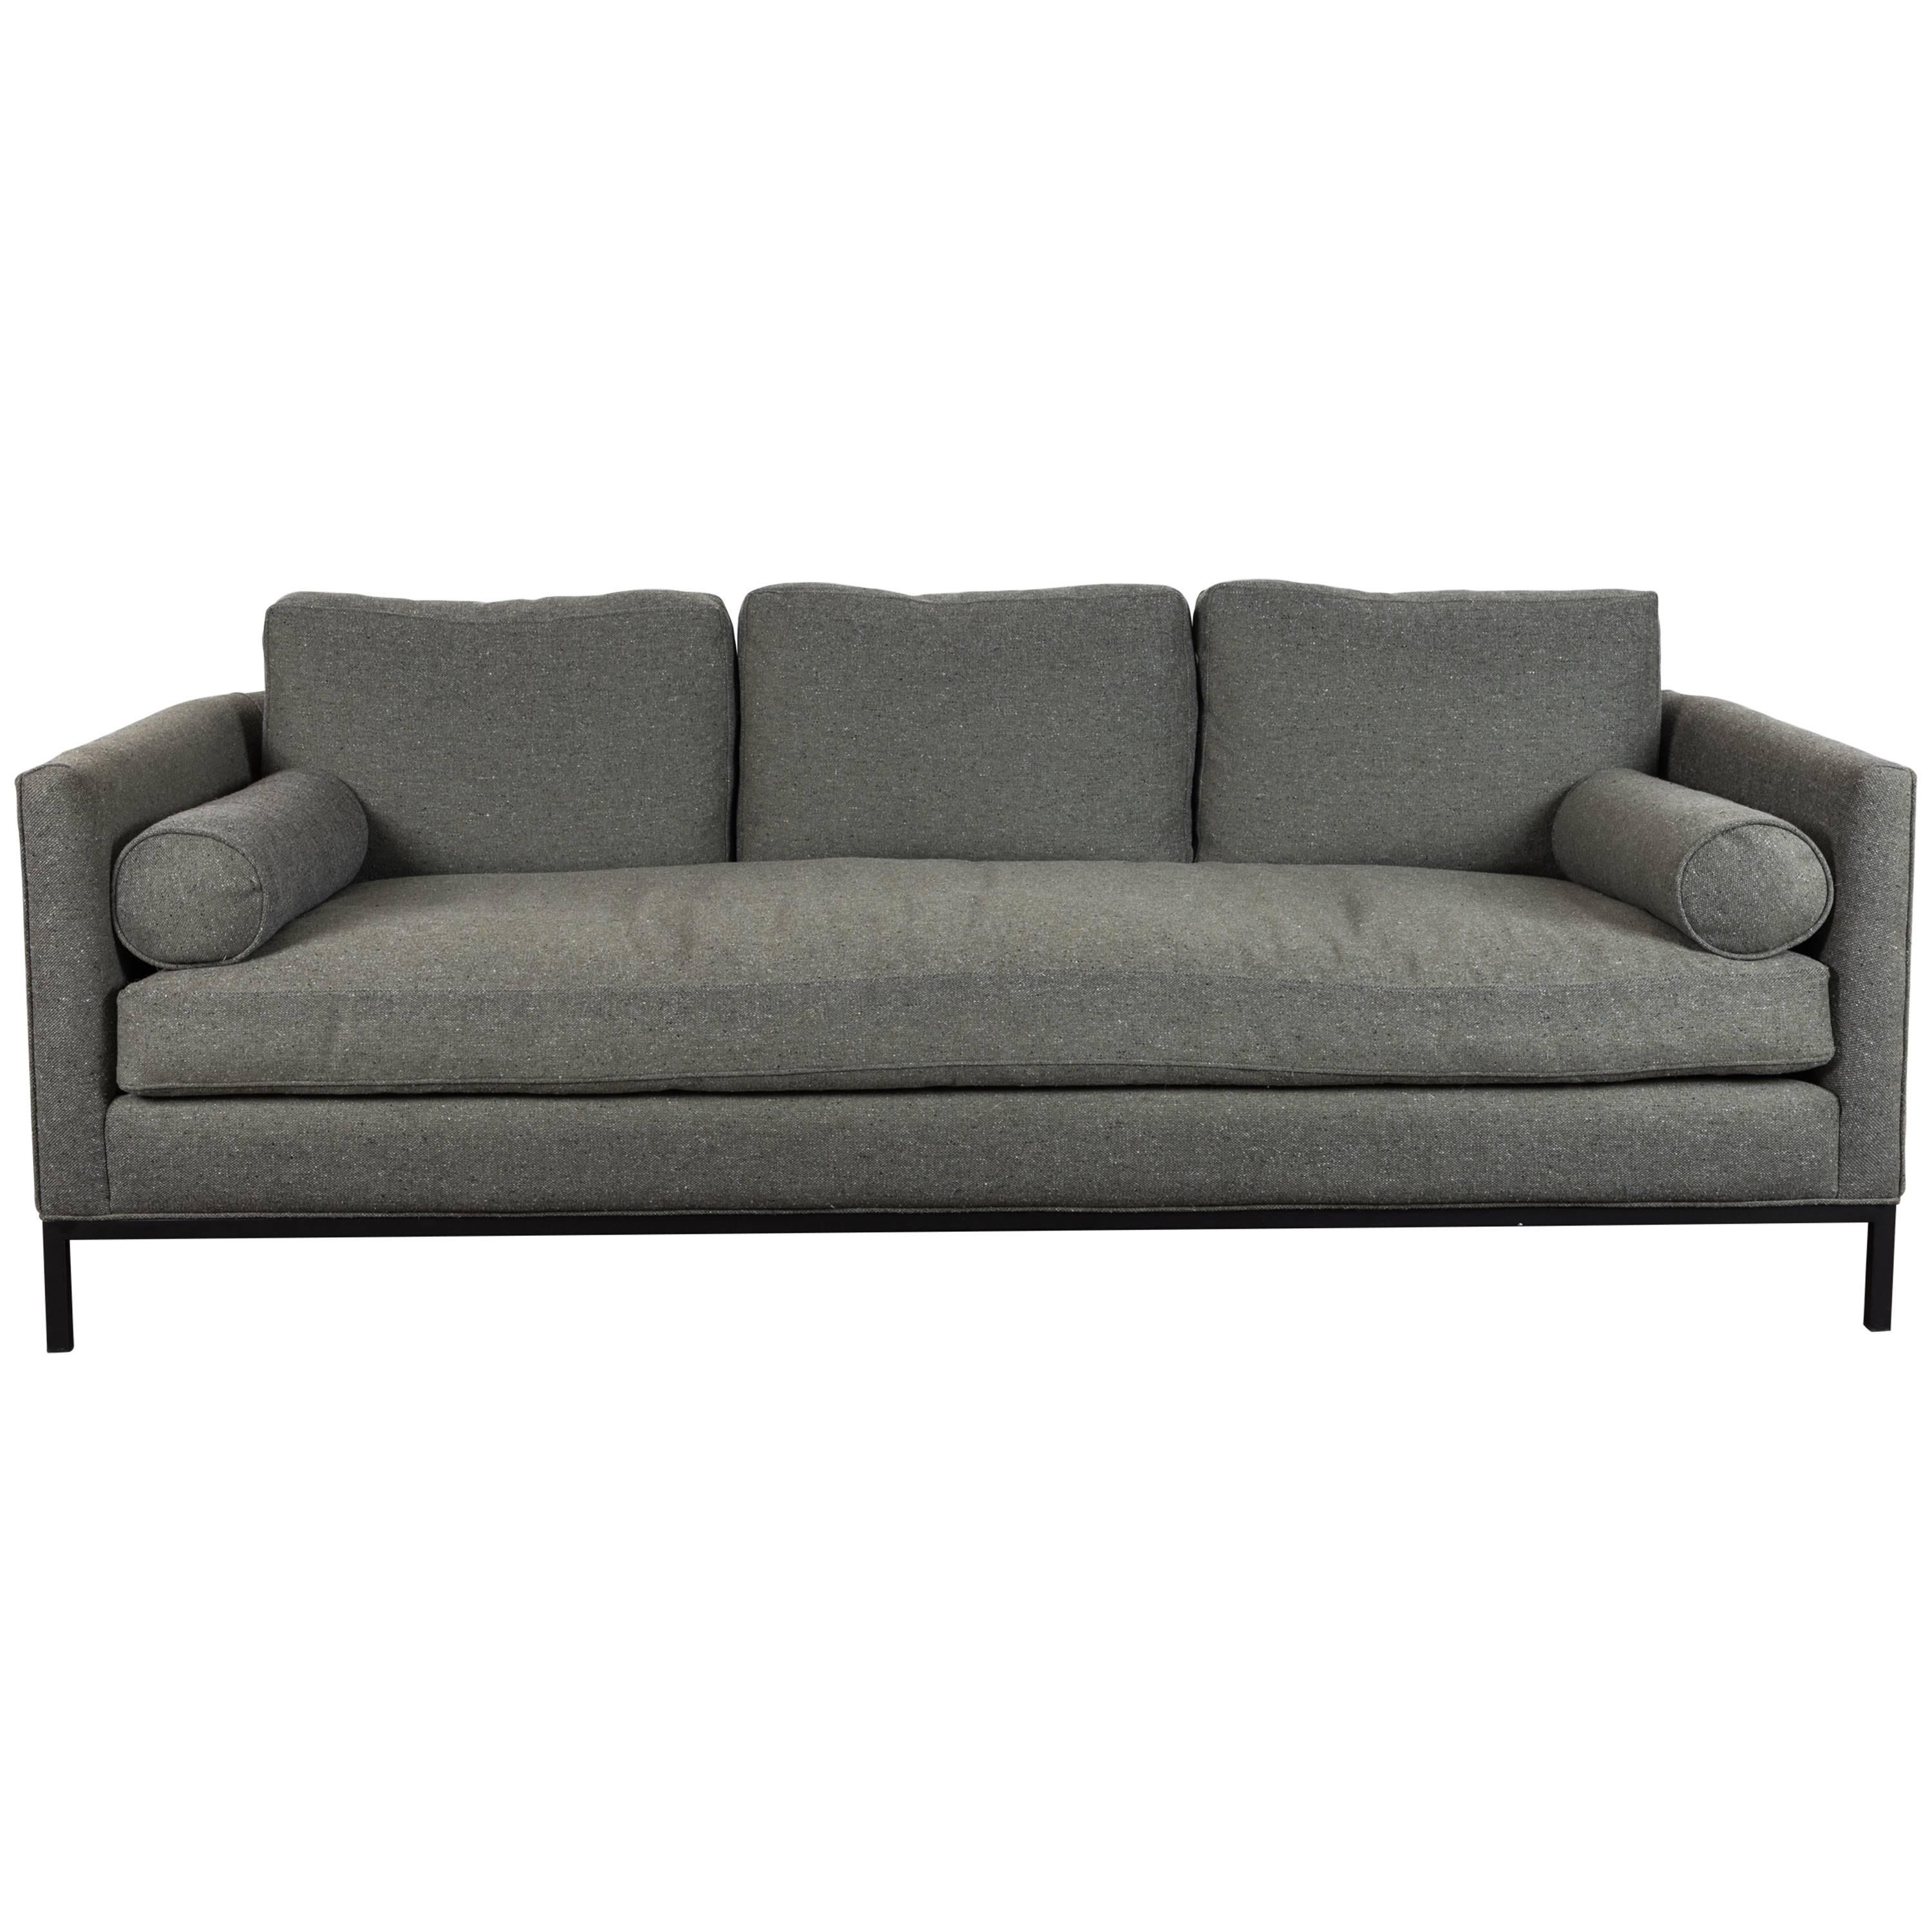 Curved Back Sofa by Lawson-Fenning